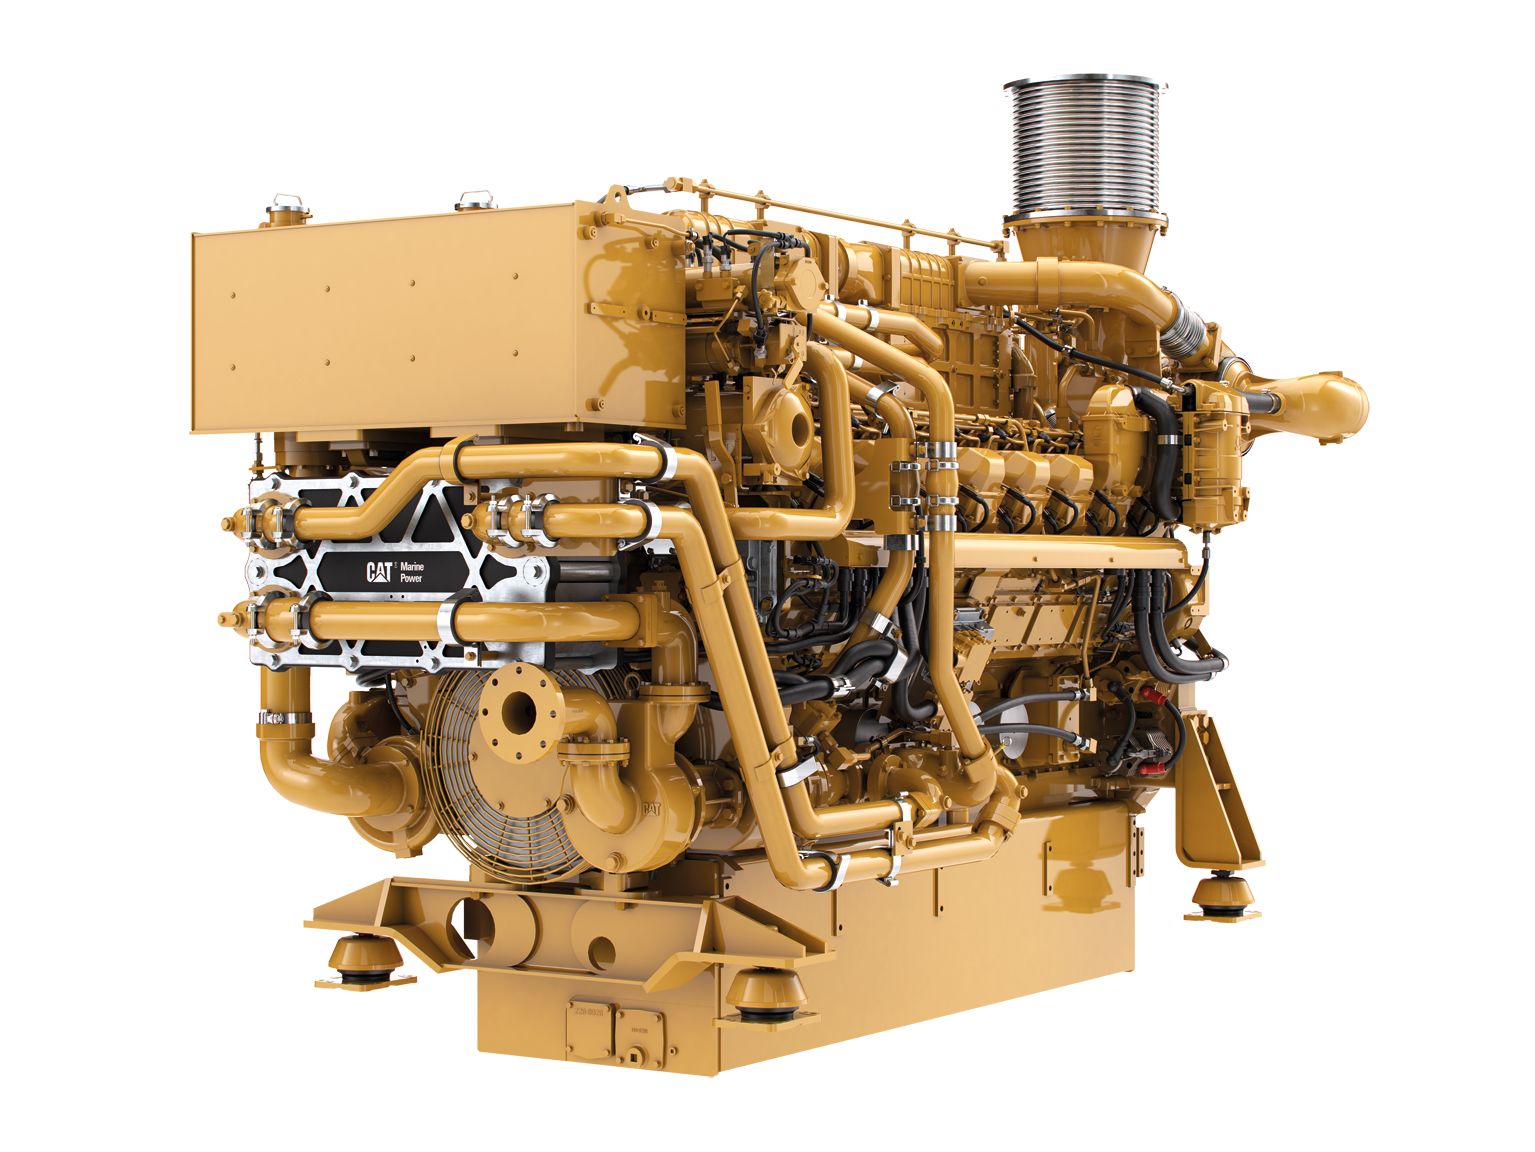 Судовой вспомогательный / дизель-электрический тяговый двигатель 3516E (стандарт Агентства по охране окружающей среды США Tier 4 Final)